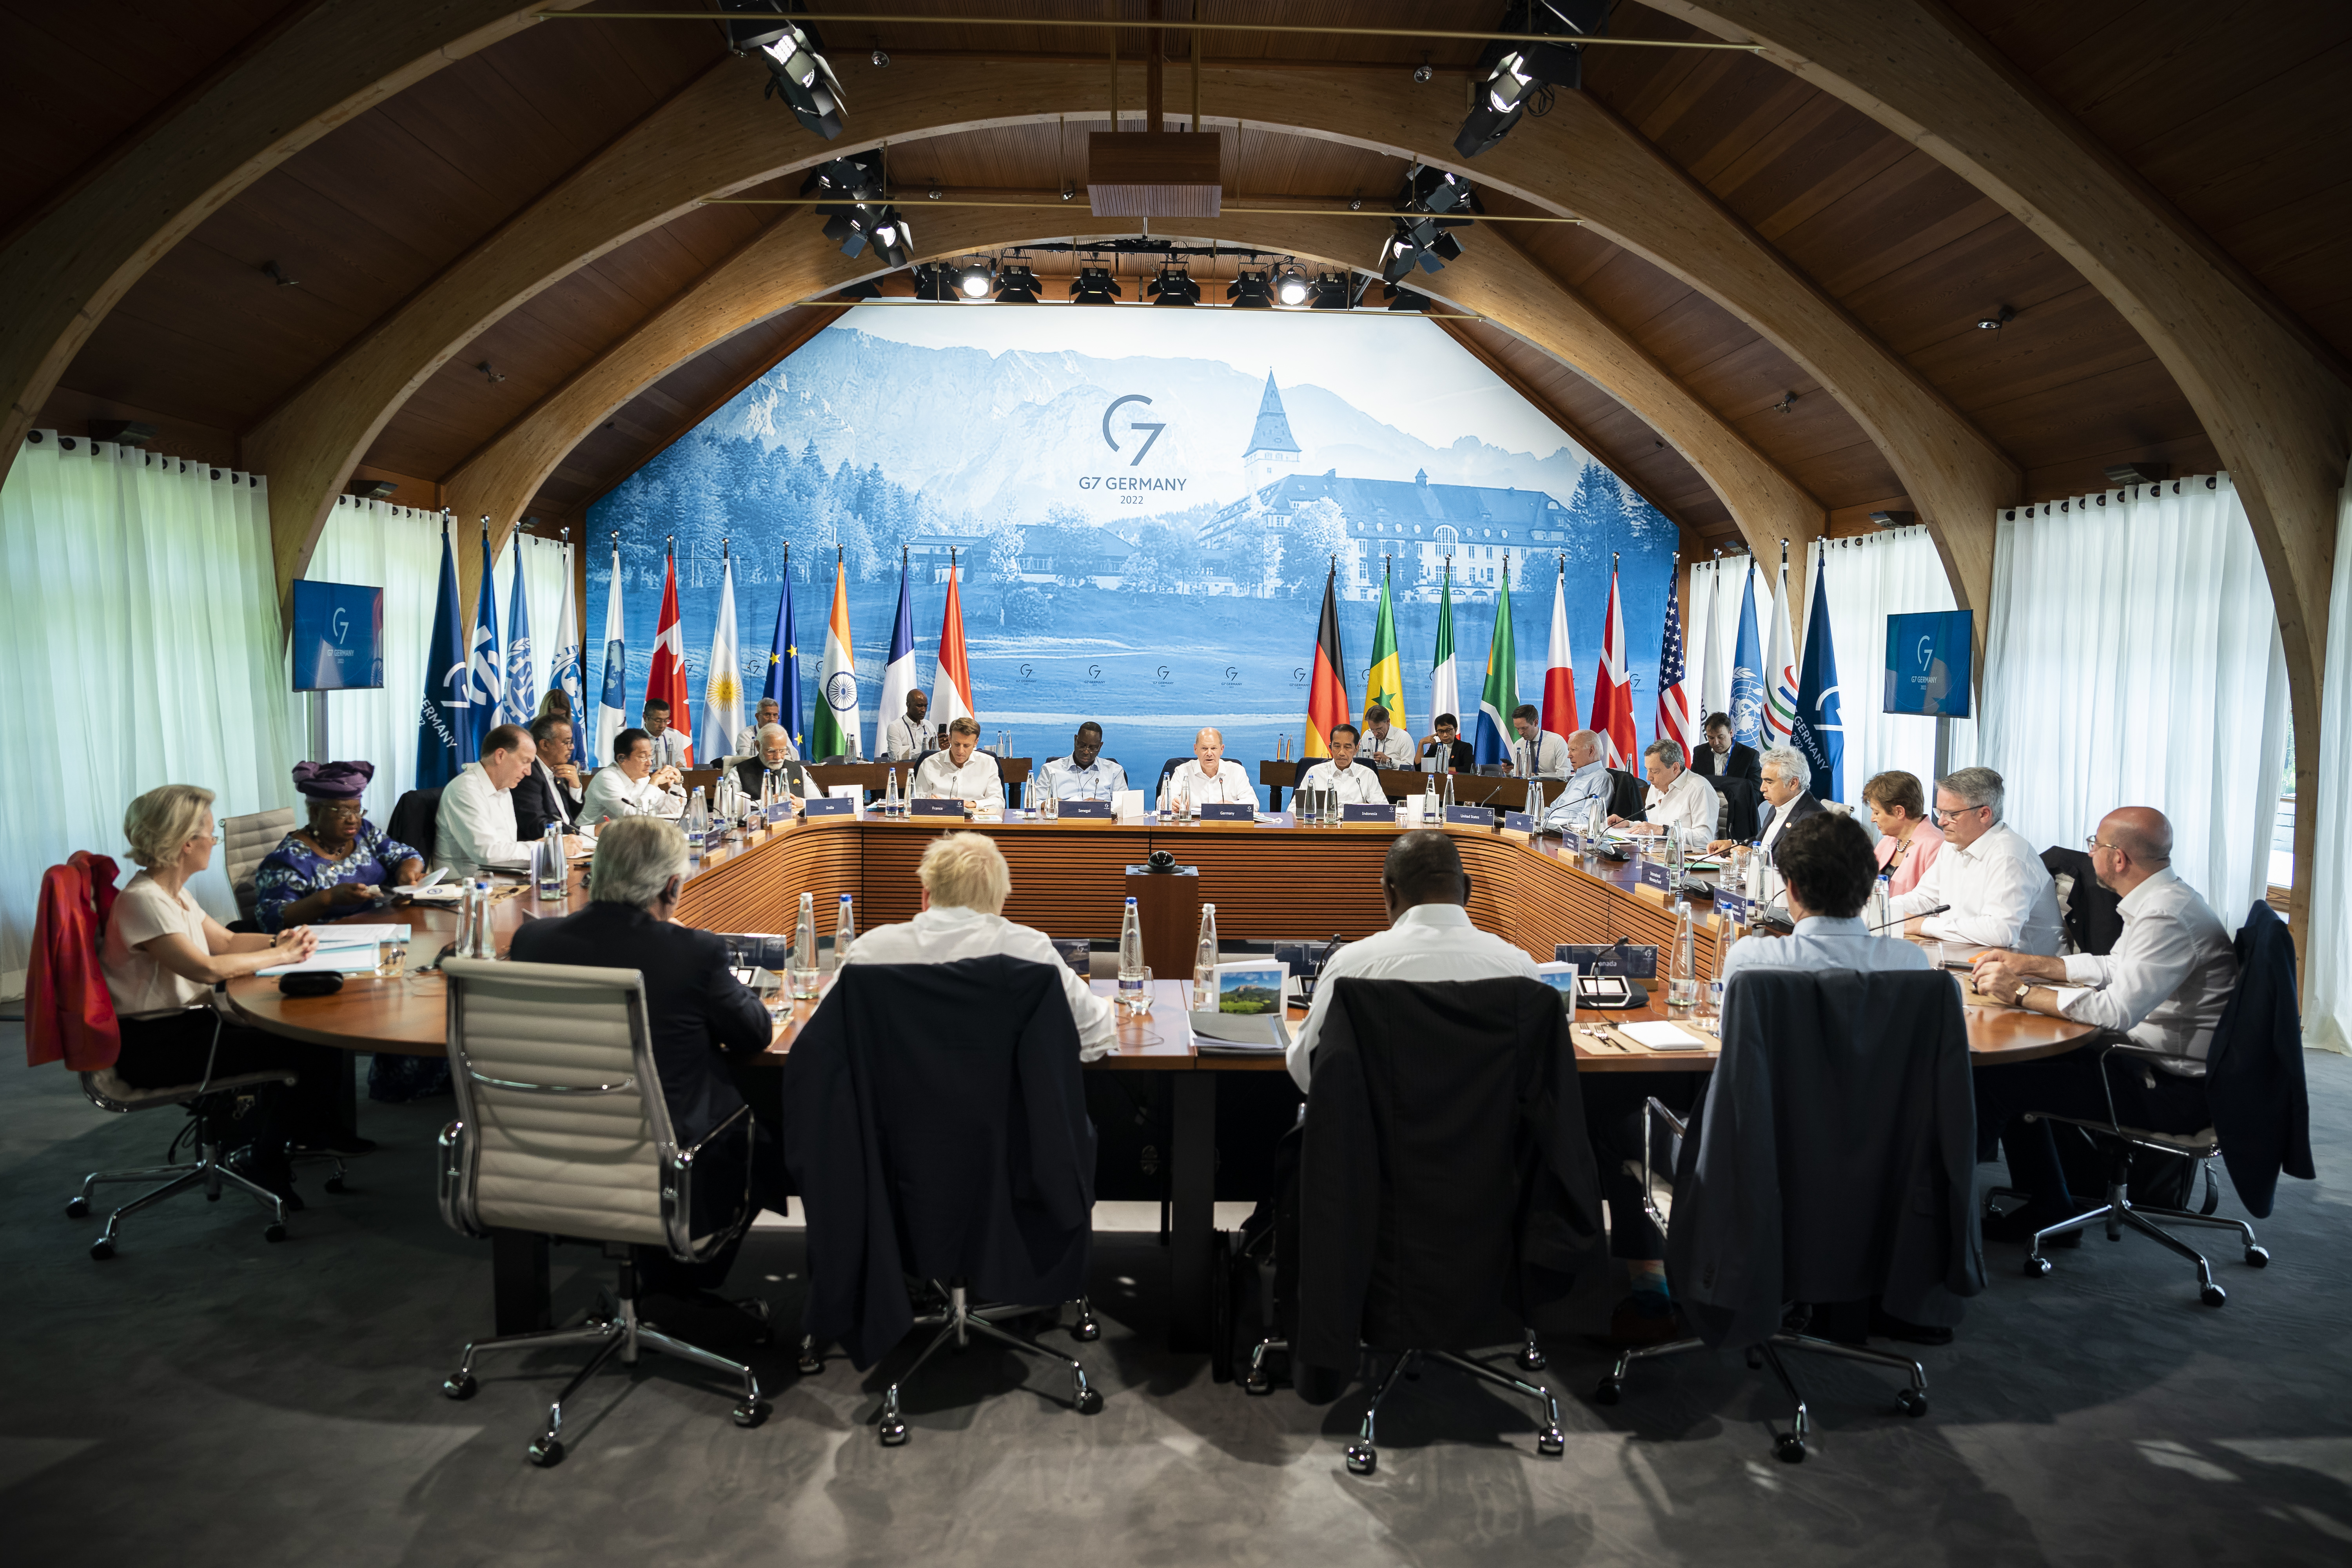 Beginn der fünften Arbeitssitzung. Teilnehmende sind die G7 Staats- und Regierungschefs, die Partnerländer, sowie Vertreter der Internationalen Organisationen.